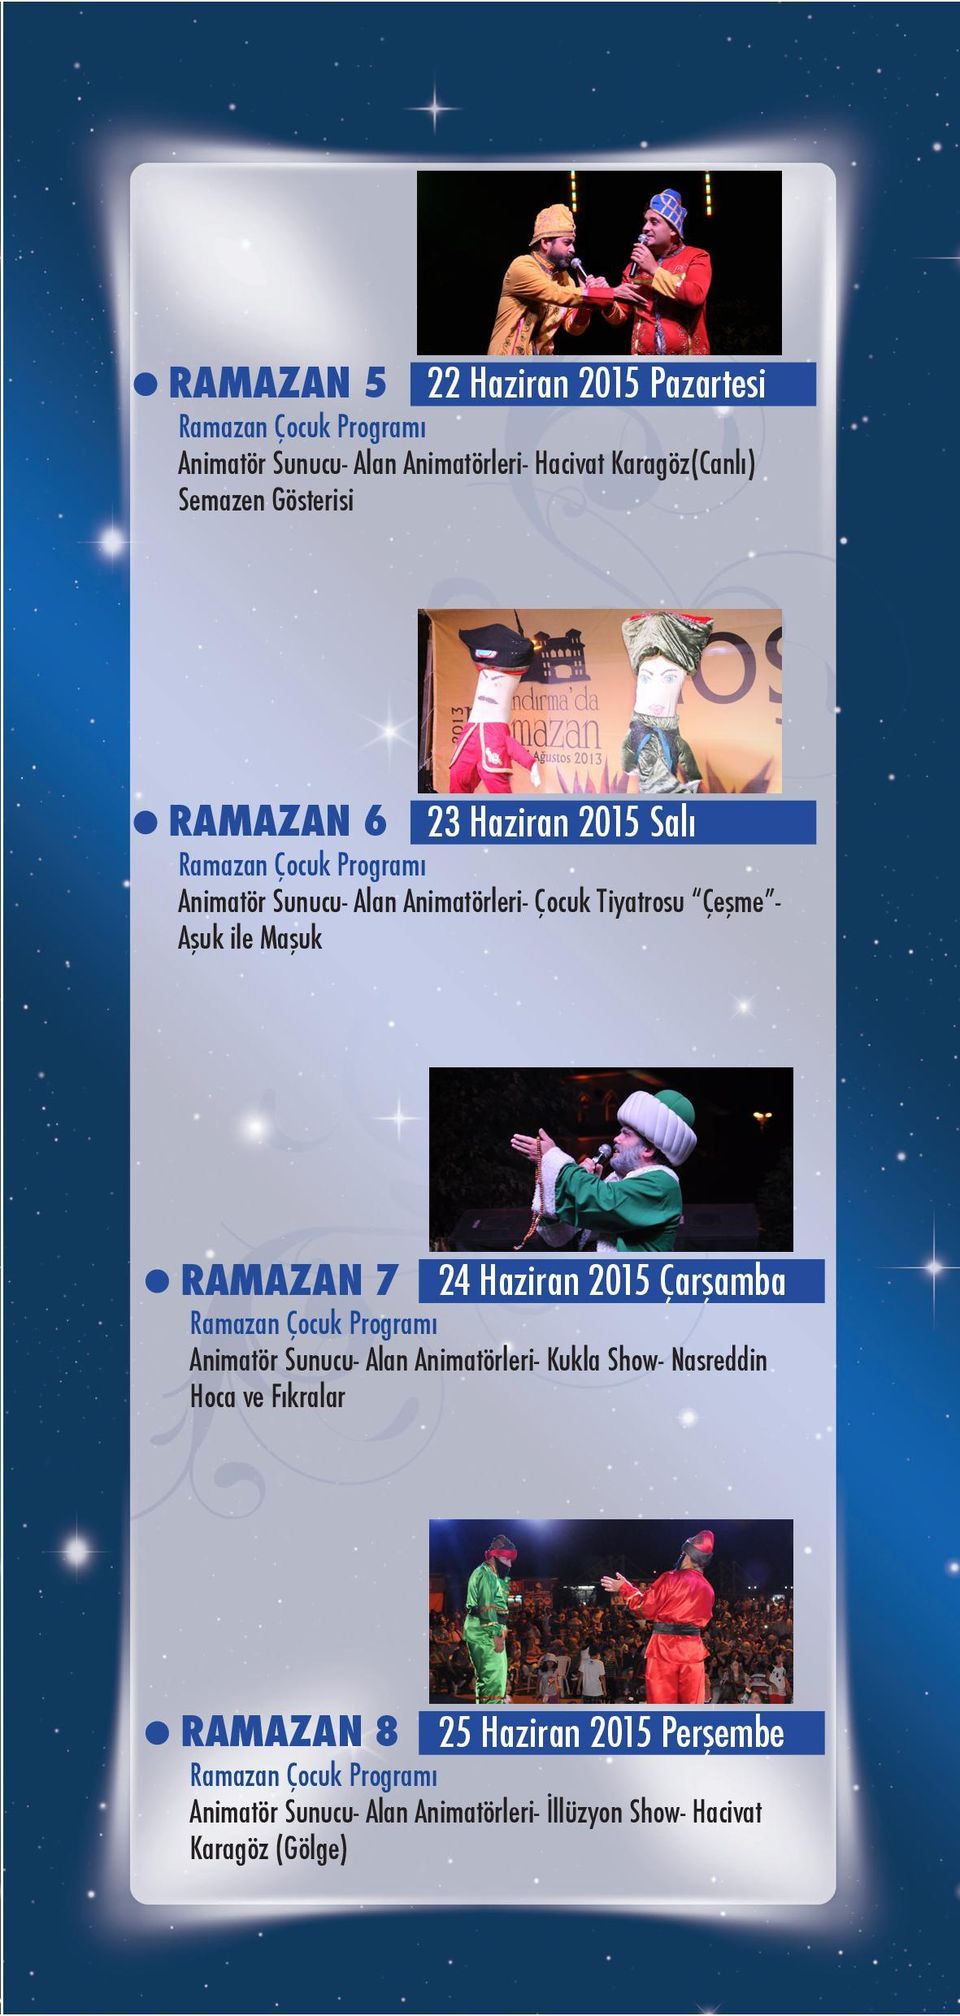 Maşuk RAMAZAN 7 24 Haziran 2015 Çarşamba Animatör Sunucu- Alan Animatörleri- Kukla Show- Nasreddin Hoca ve